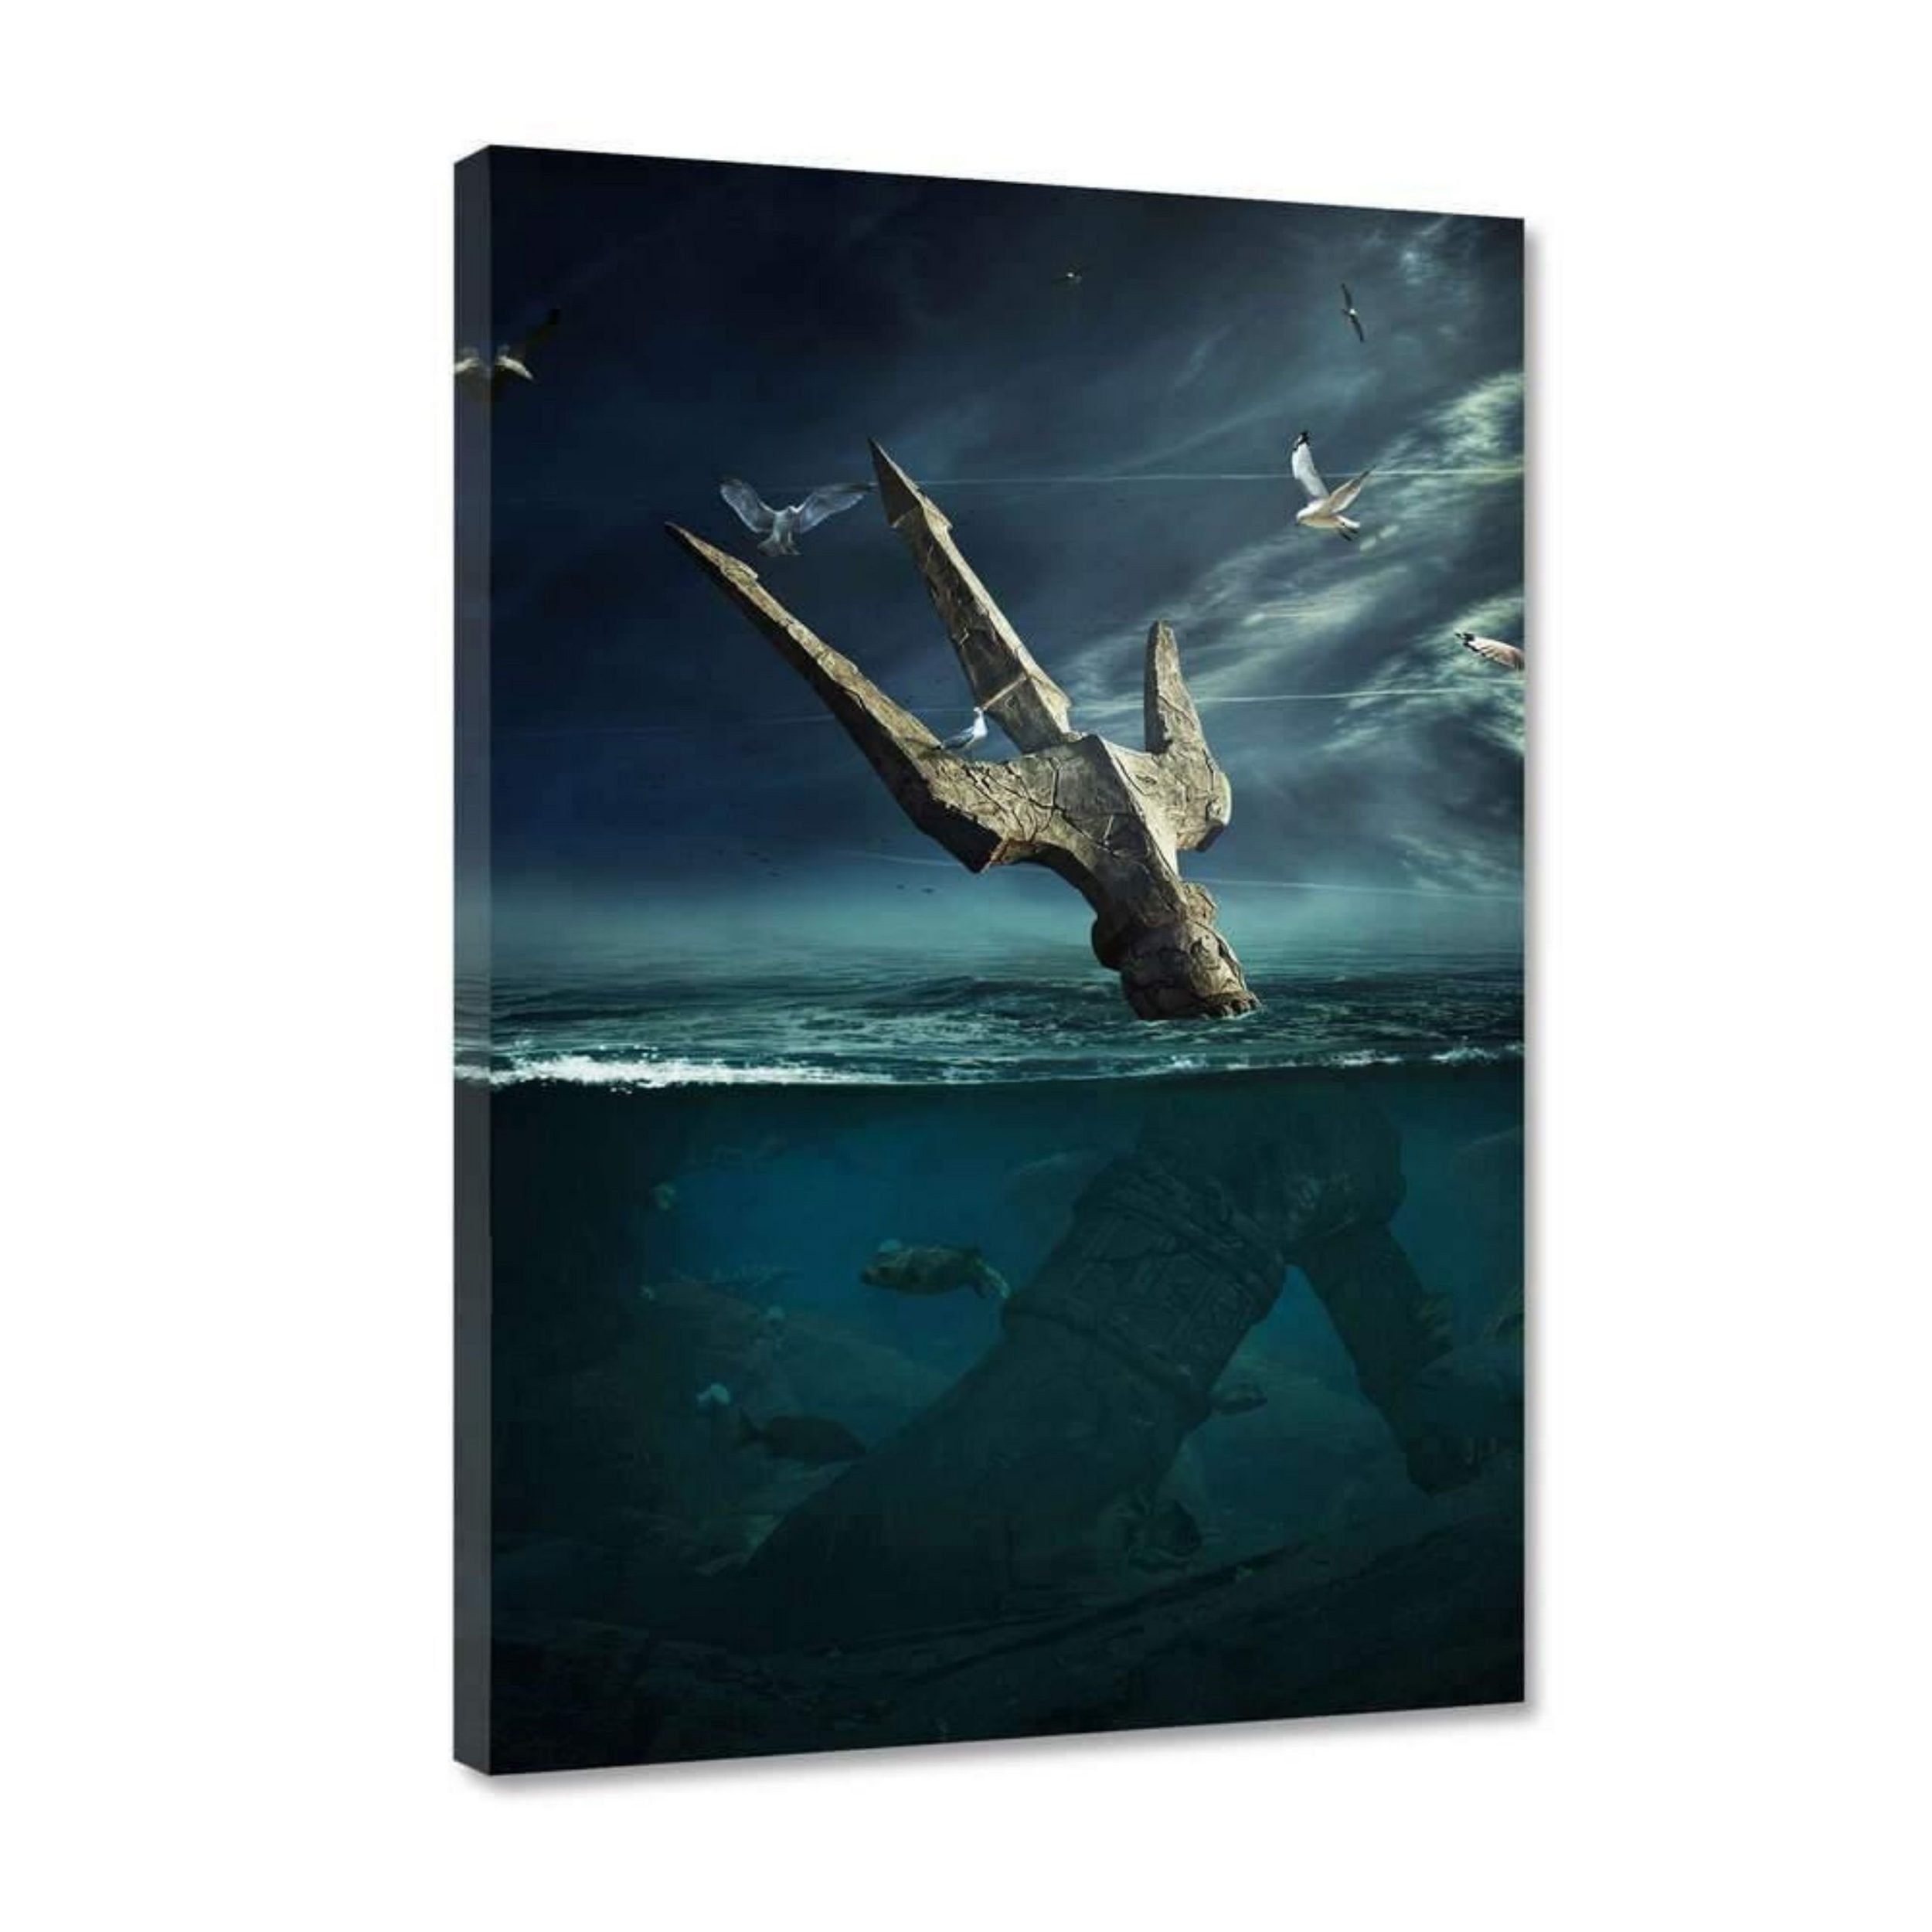 Hustling Sharks Leinwandbild Premium Kunstdruck als XXL Leinwandbild "Last Hope Poseidon" - außergewöhnliches Meeresbild, in 5 unterschiedlichen Größen verfügbar